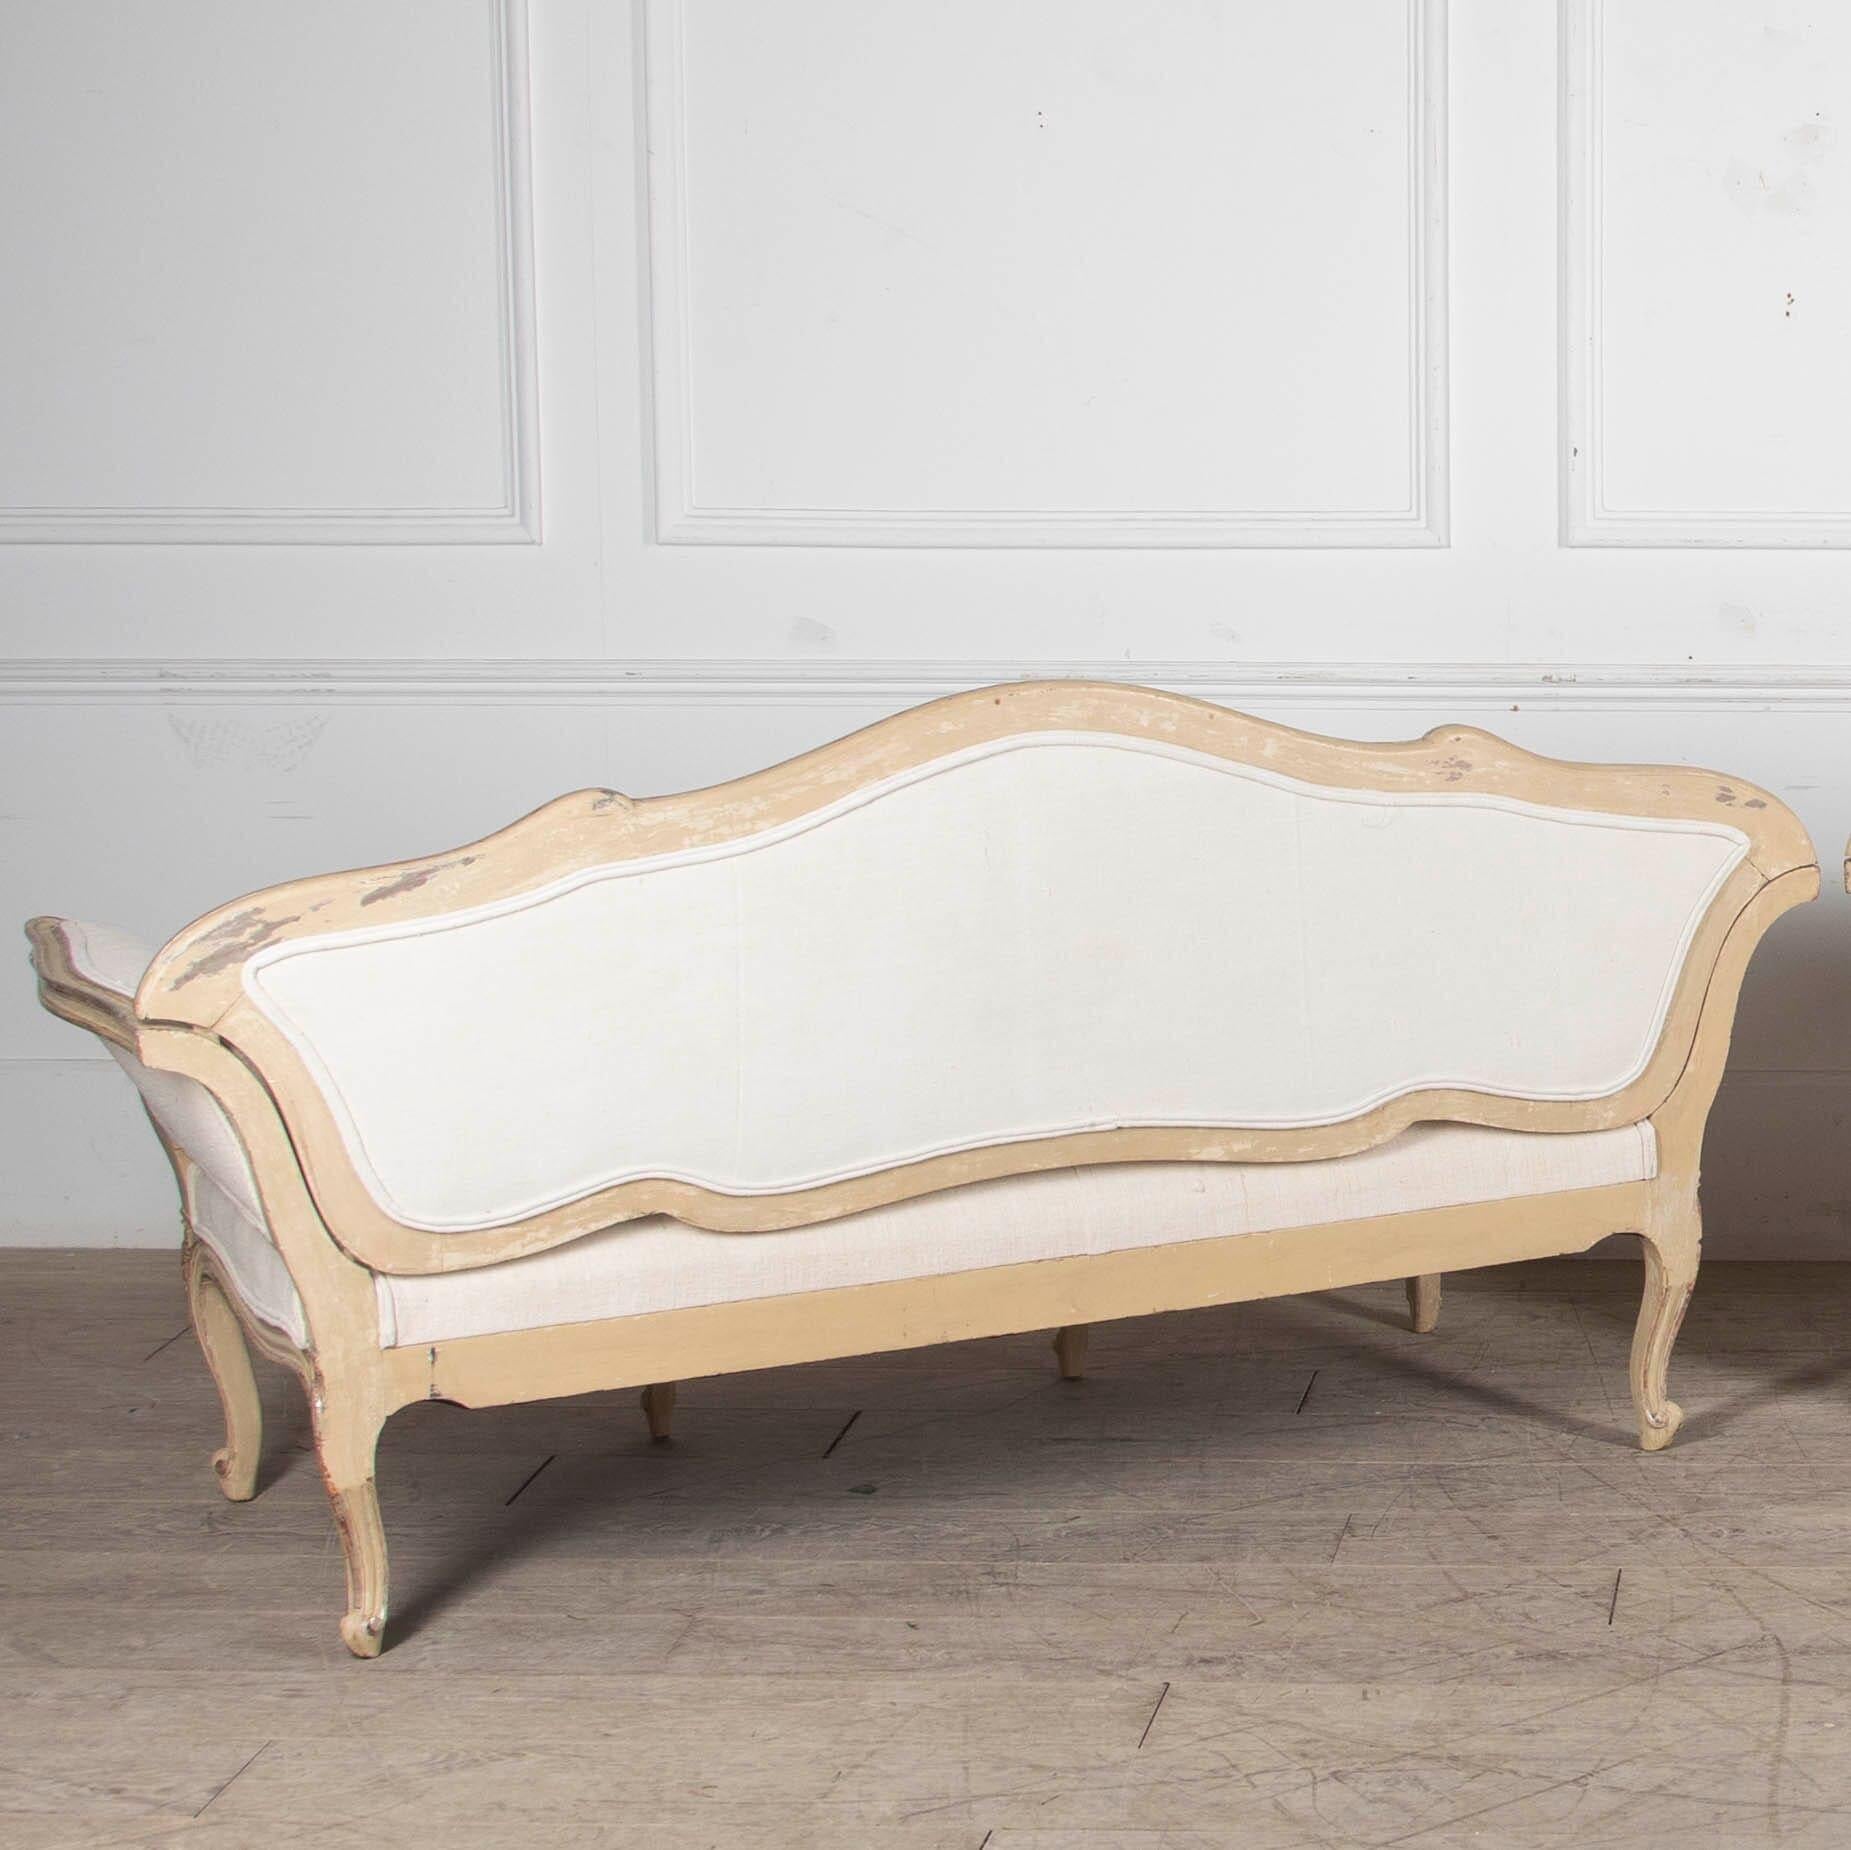 Wunderschönes Paar französischer Sofas aus dem 20. Jahrhundert, die trocken geschabt wurden, um die ursprüngliche Farbe mit einem Teil des ursprünglichen Silbers wiederherzustellen.
Diese Sofas wurden dann mit französischem Leinen aus der Zeit neu